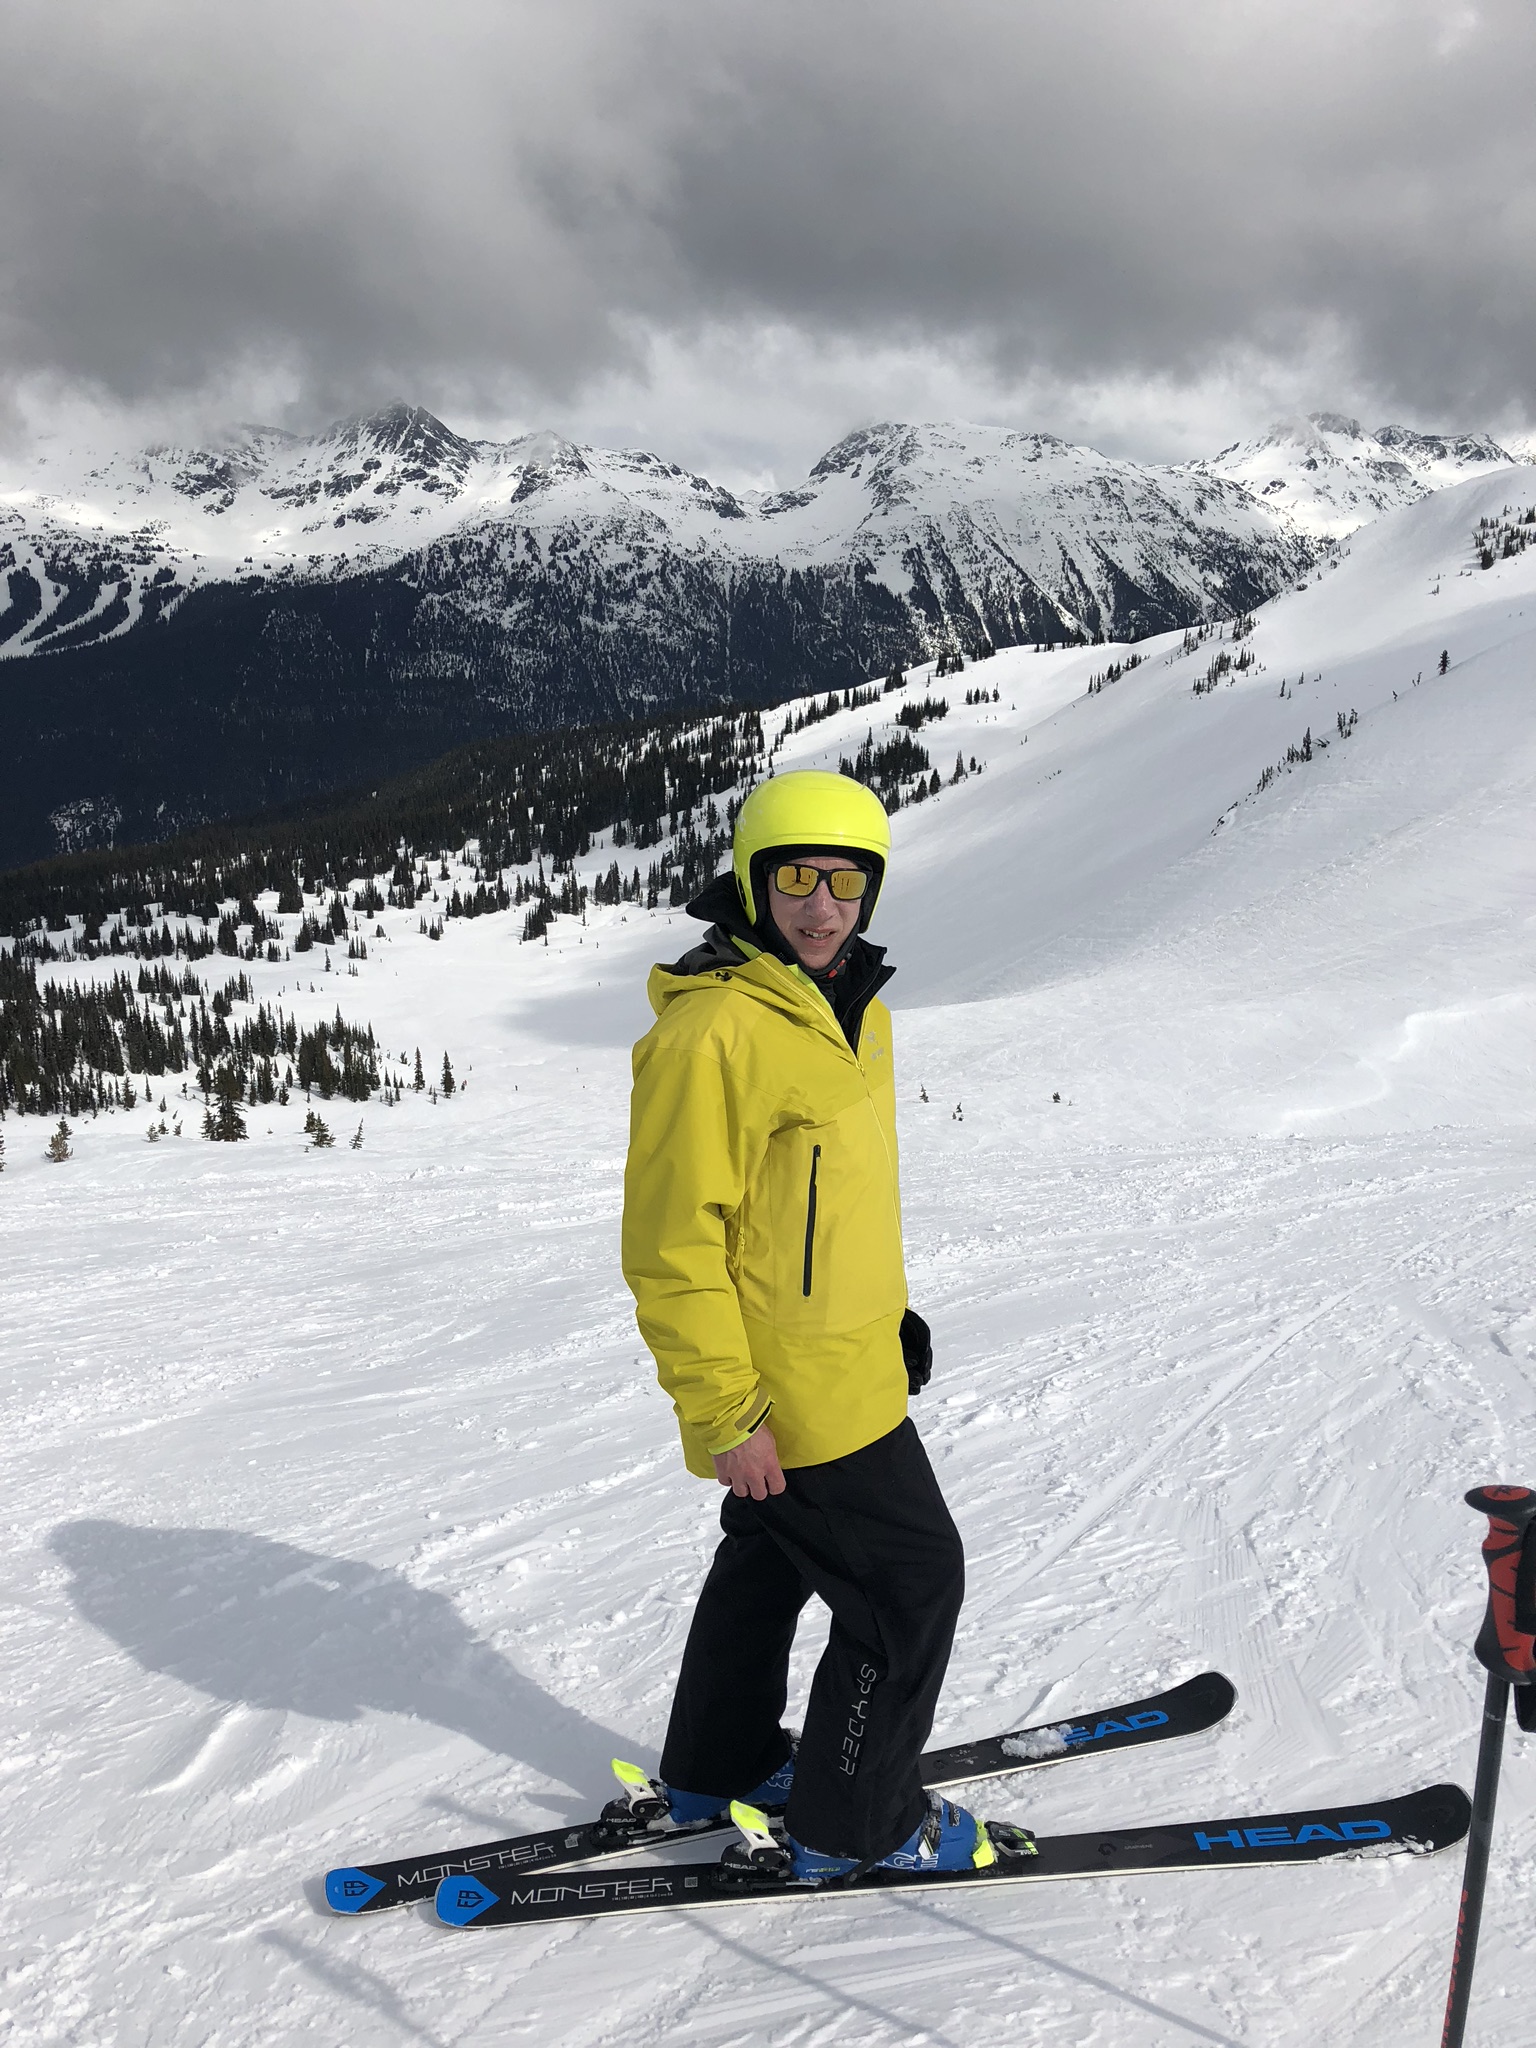 Skiing at Whistler, BC.